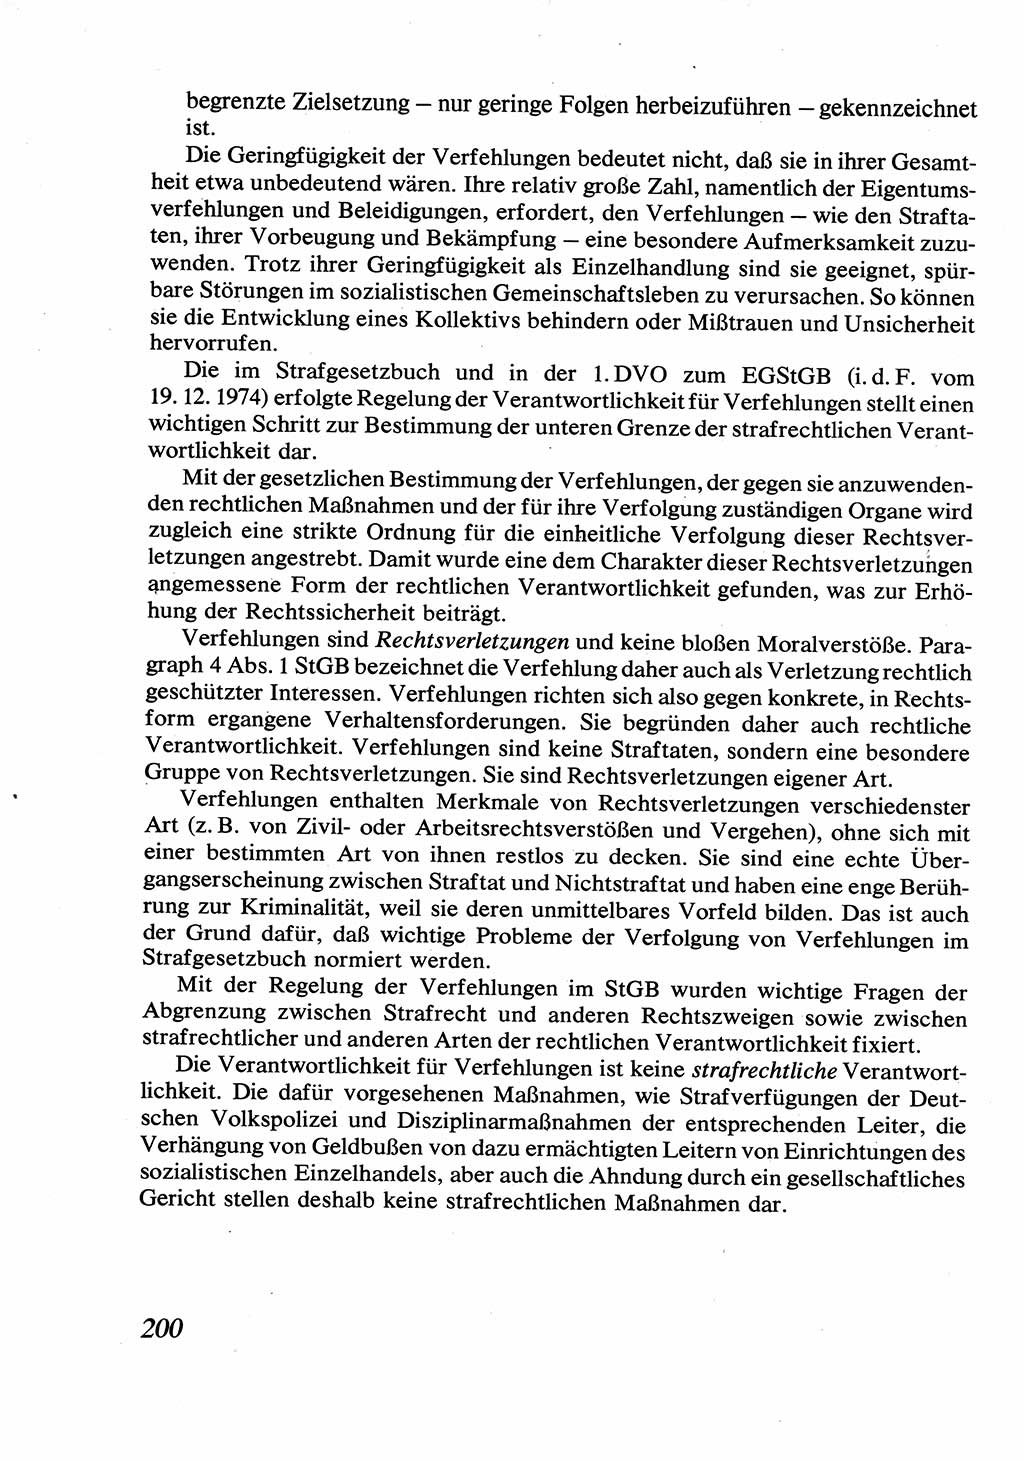 Strafrecht [Deutsche Demokratische Republik (DDR)], Allgemeiner Teil, Lehrbuch 1976, Seite 200 (Strafr. DDR AT Lb. 1976, S. 200)